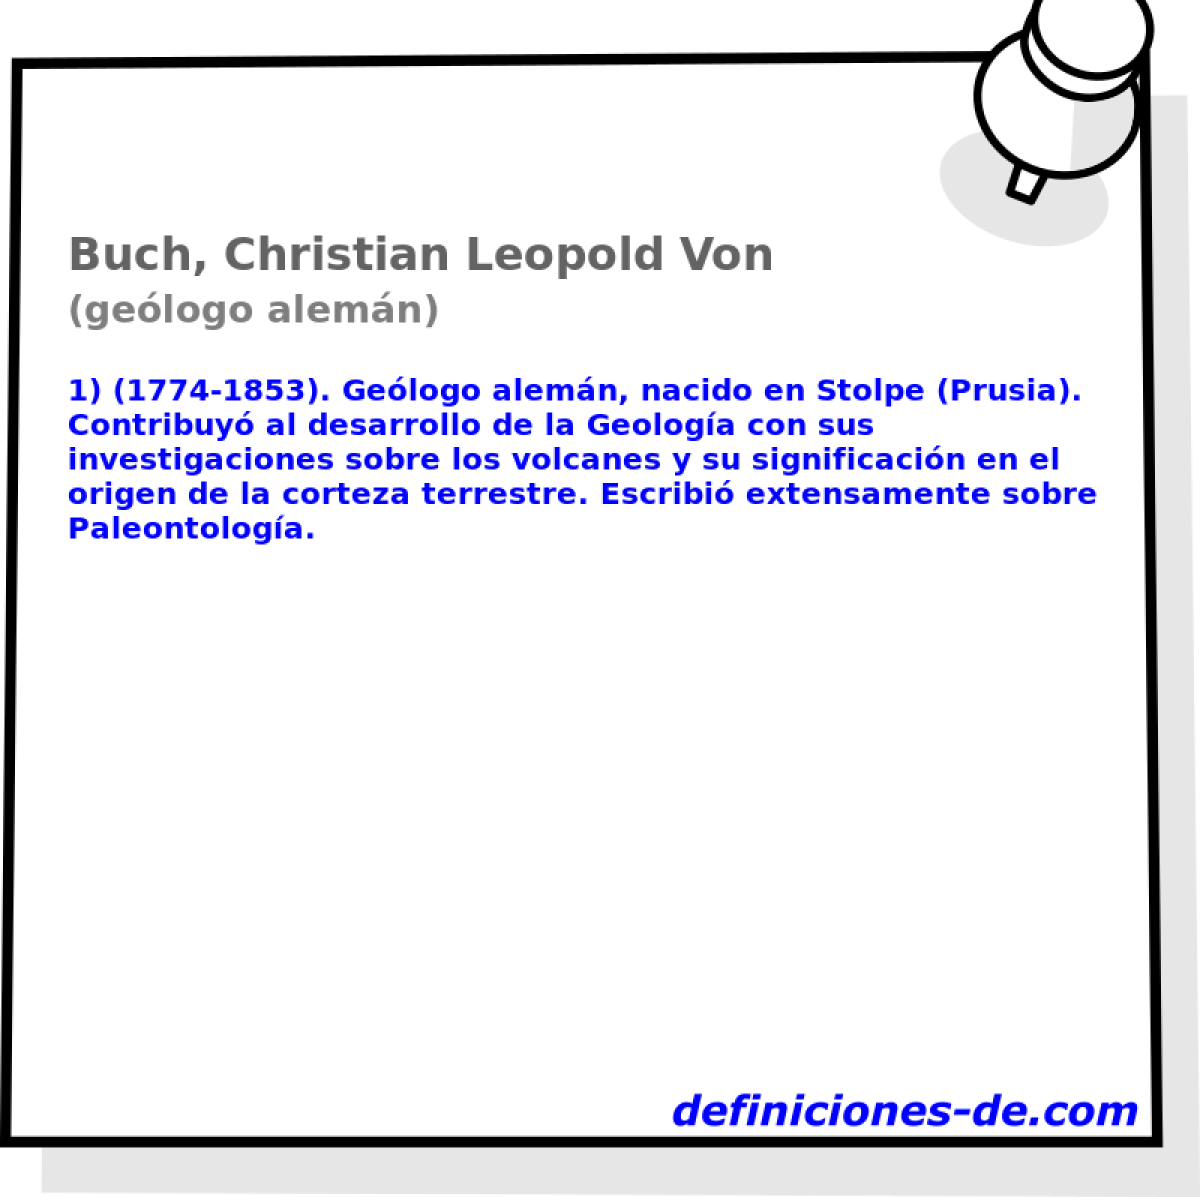 Buch, Christian Leopold Von (gelogo alemn)